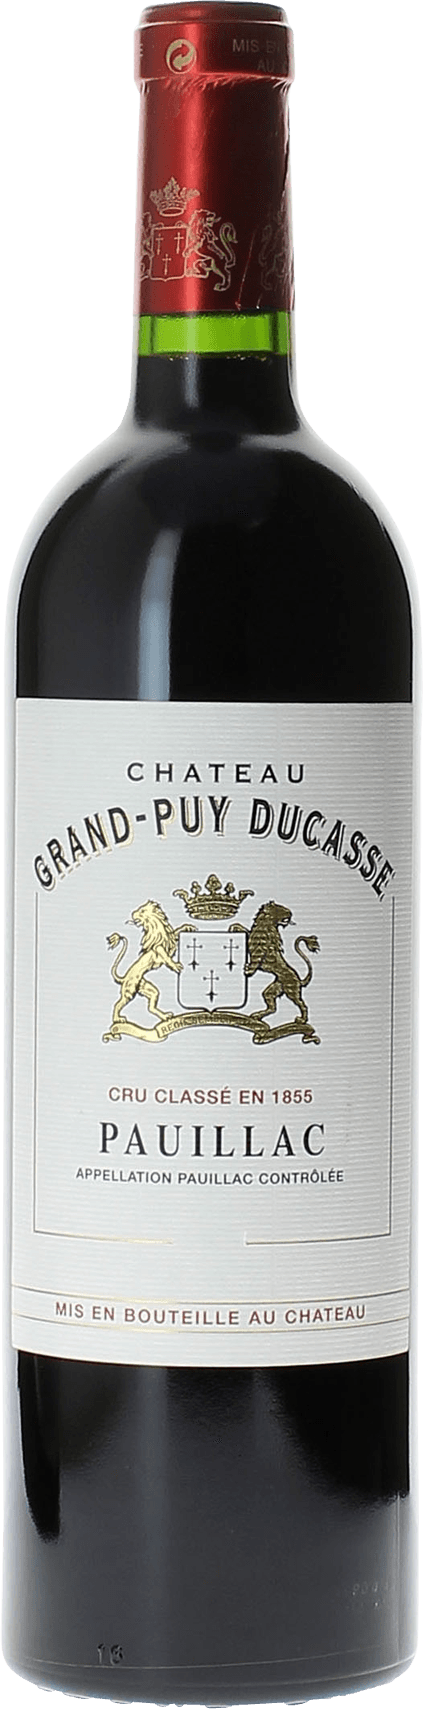 Grand puy ducasse 2005 5 me Grand cru class Pauillac, Bordeaux rouge